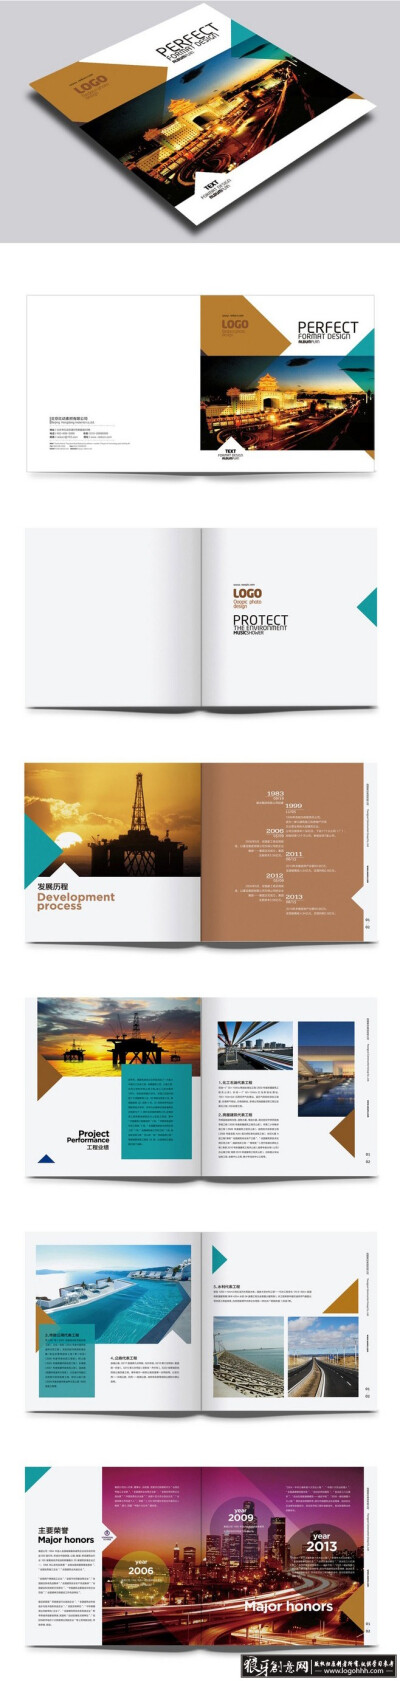 创意画册 时尚简洁画册版式设计 创意图片元素画册封面设计 简约画册